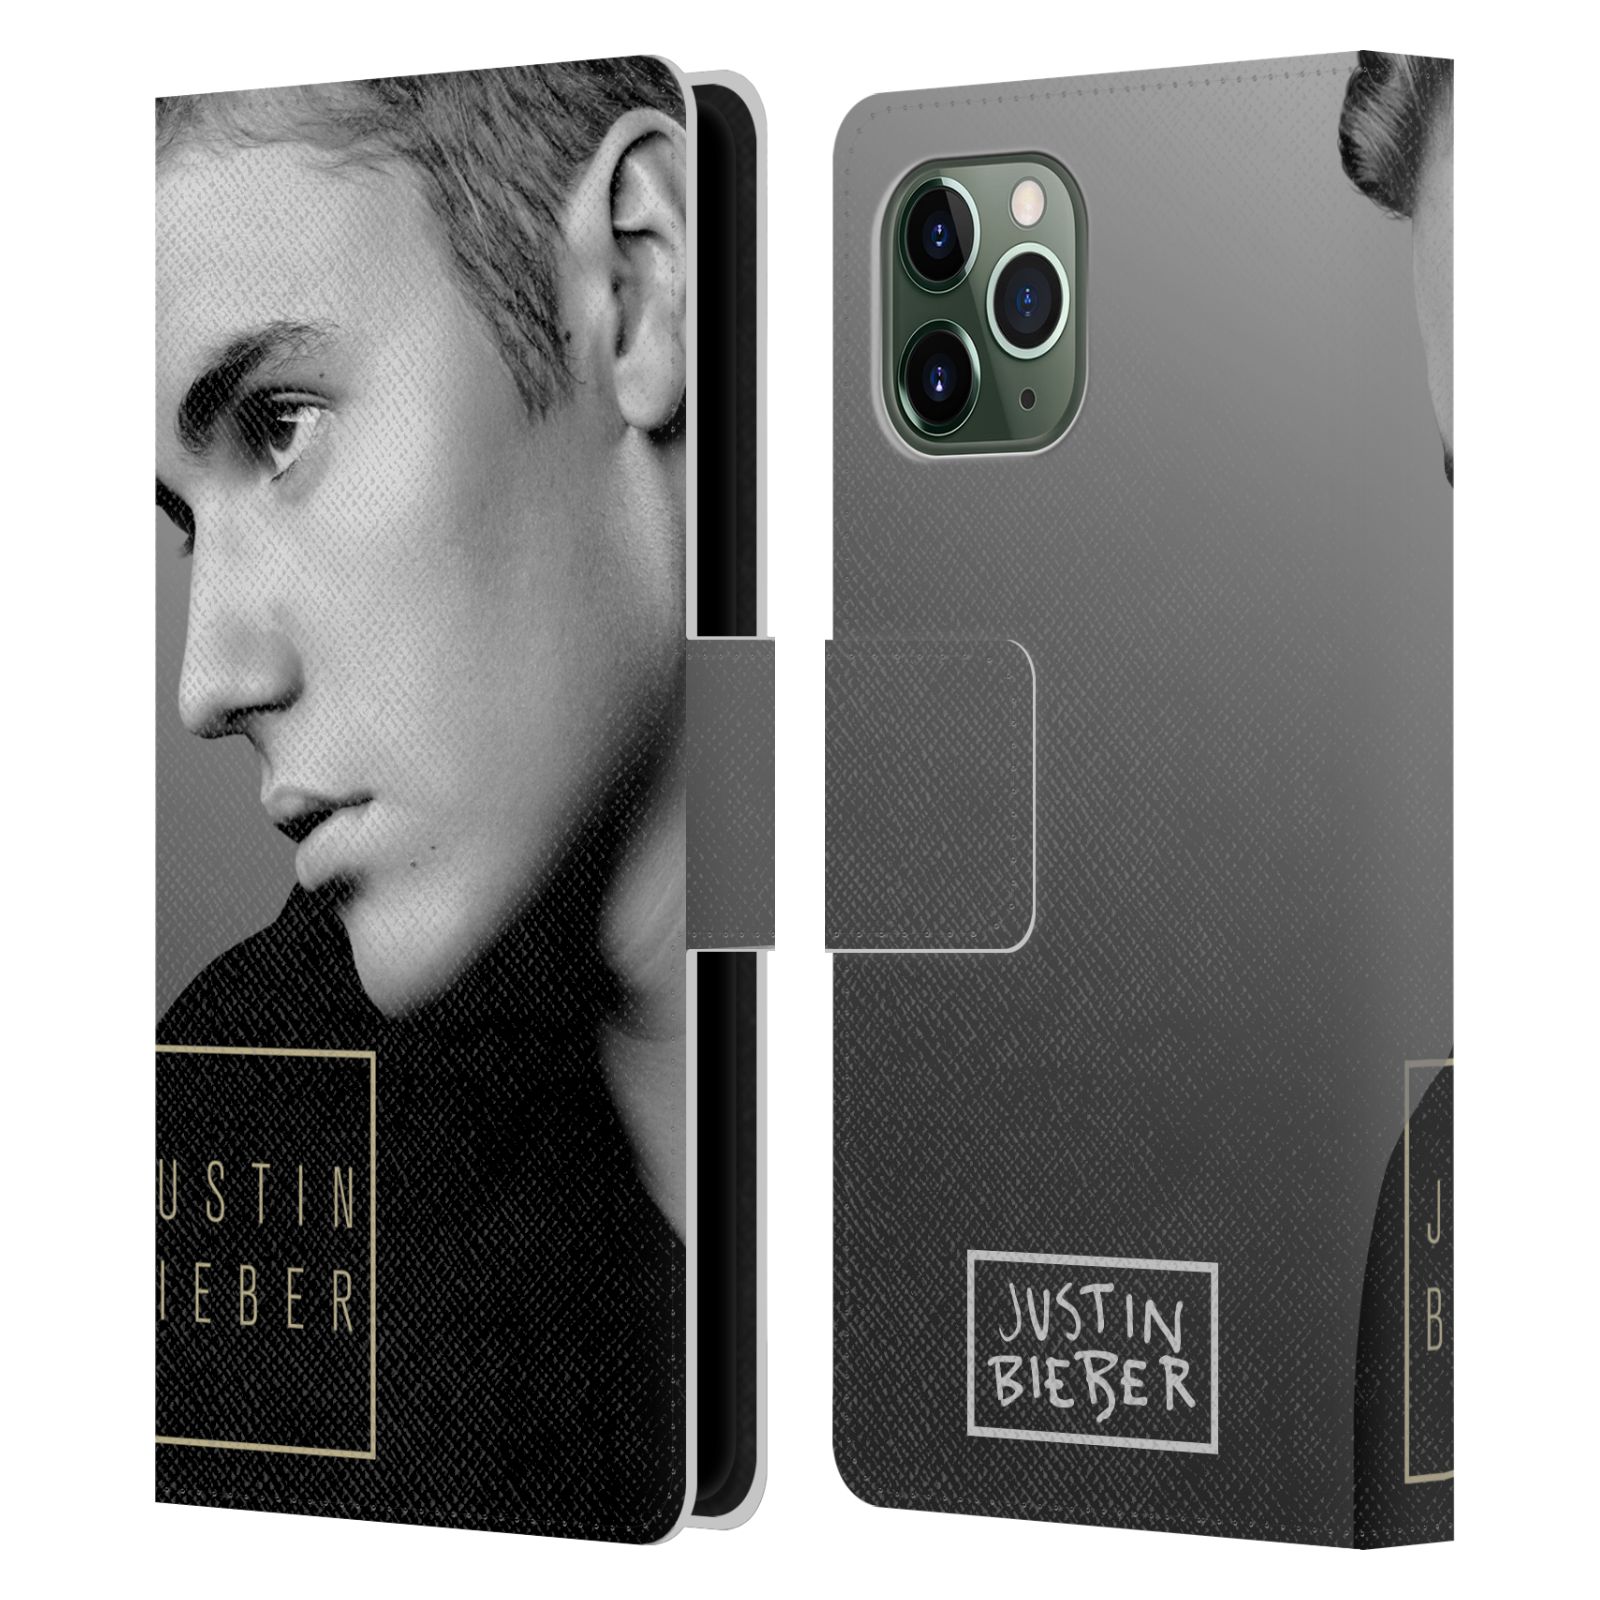 Pouzdro na mobil Apple Iphone 11 PRO - Head Case - Justin Bieber - černobílé zrcadlo